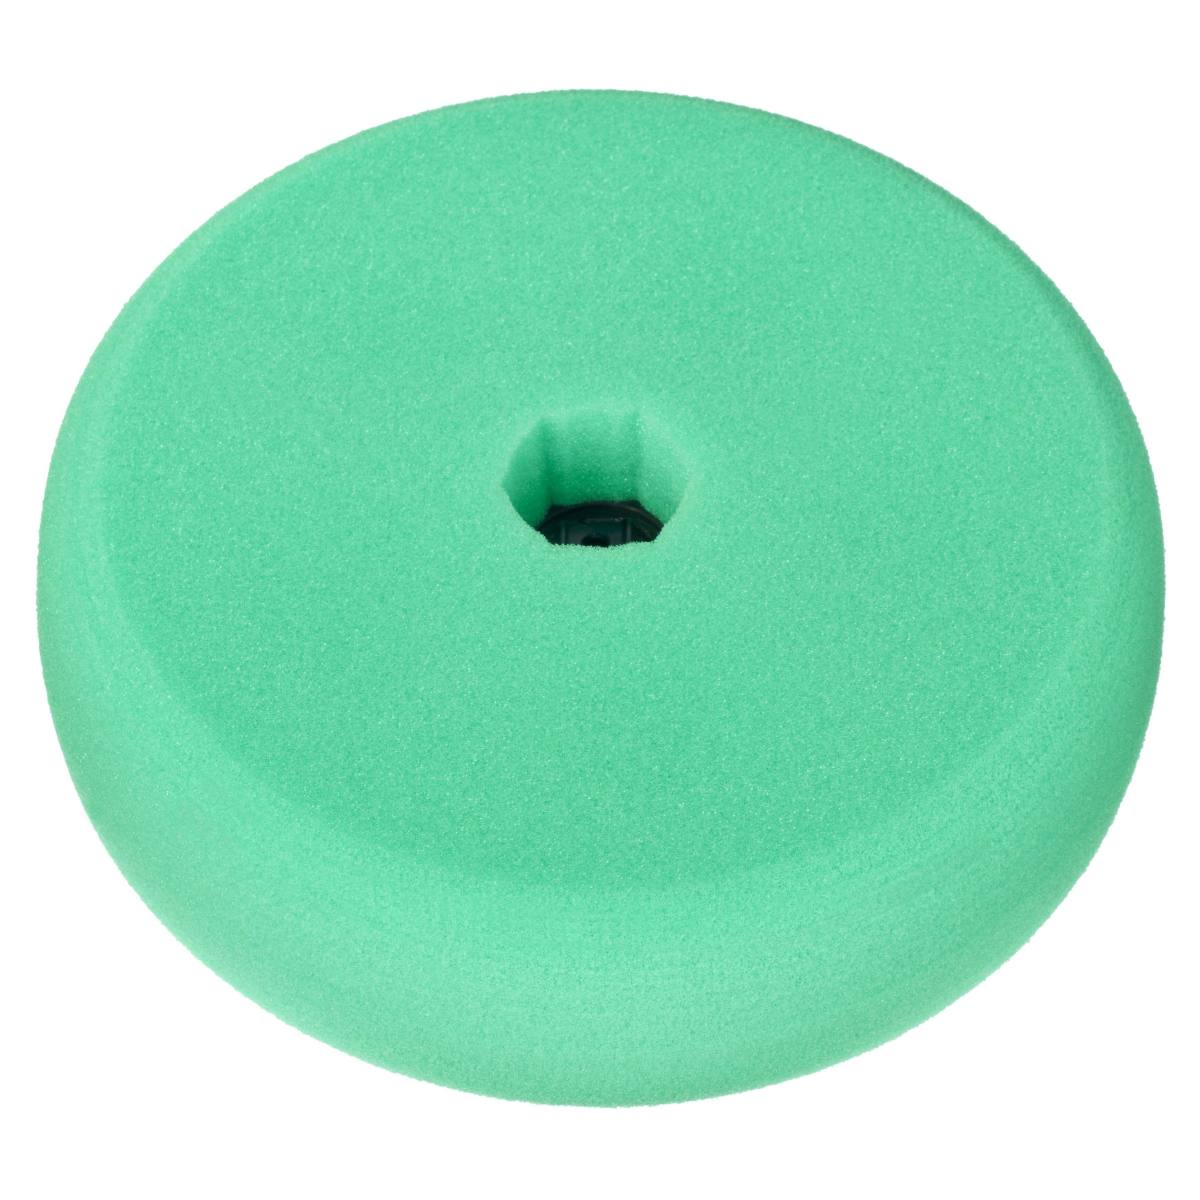 3M Quick Connect Perfect-it III polijstschuim, dubbelzijdig glad, groen, 150 mm